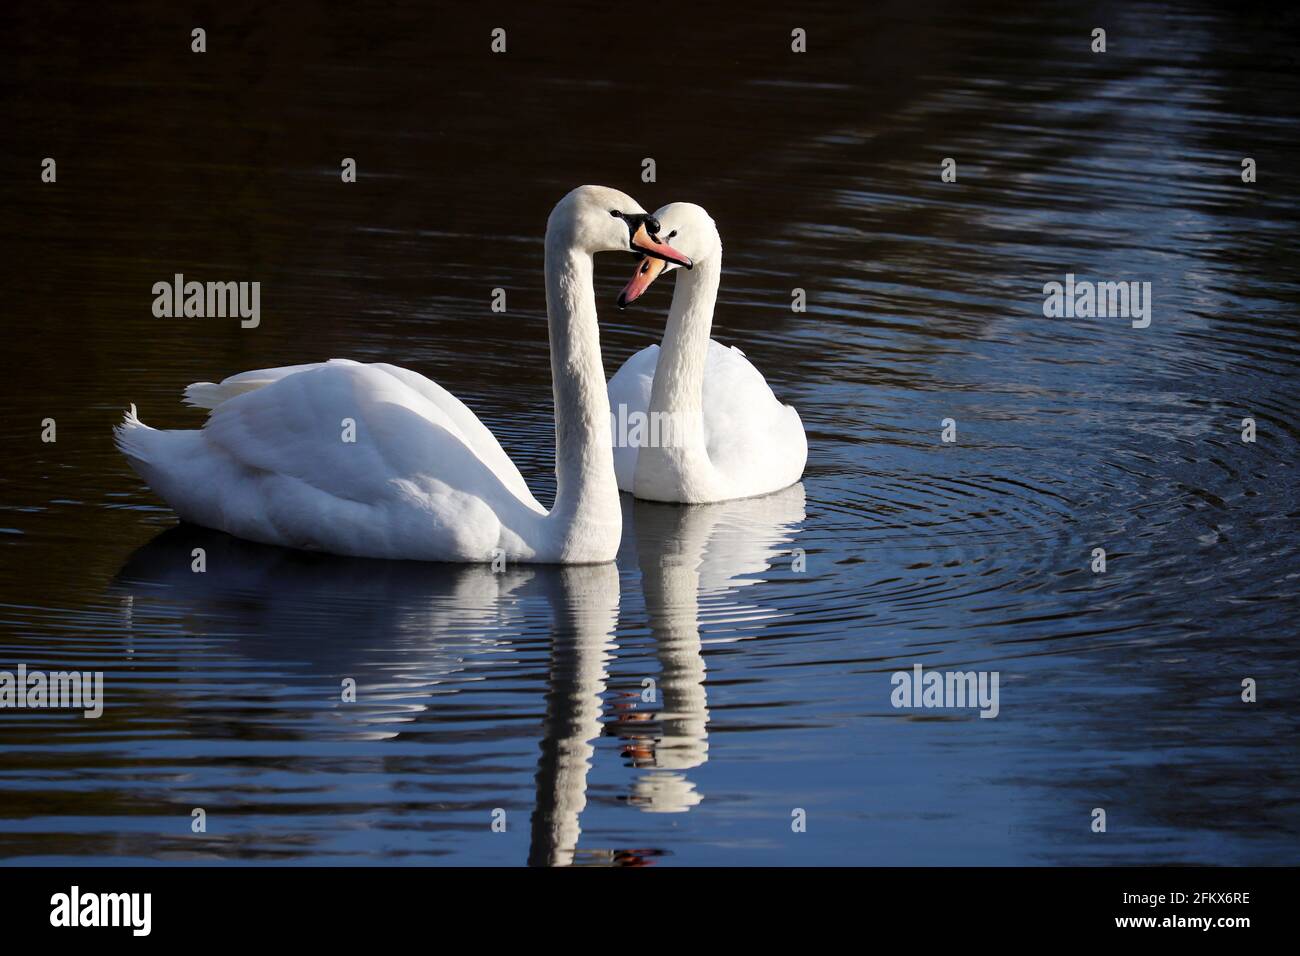 Ein paar weiße Schwäne schwimmen auf einem See, Spiegelung auf der Wasseroberfläche. Romantische Szene, Konzept von Liebe und Loyalität Stockfoto